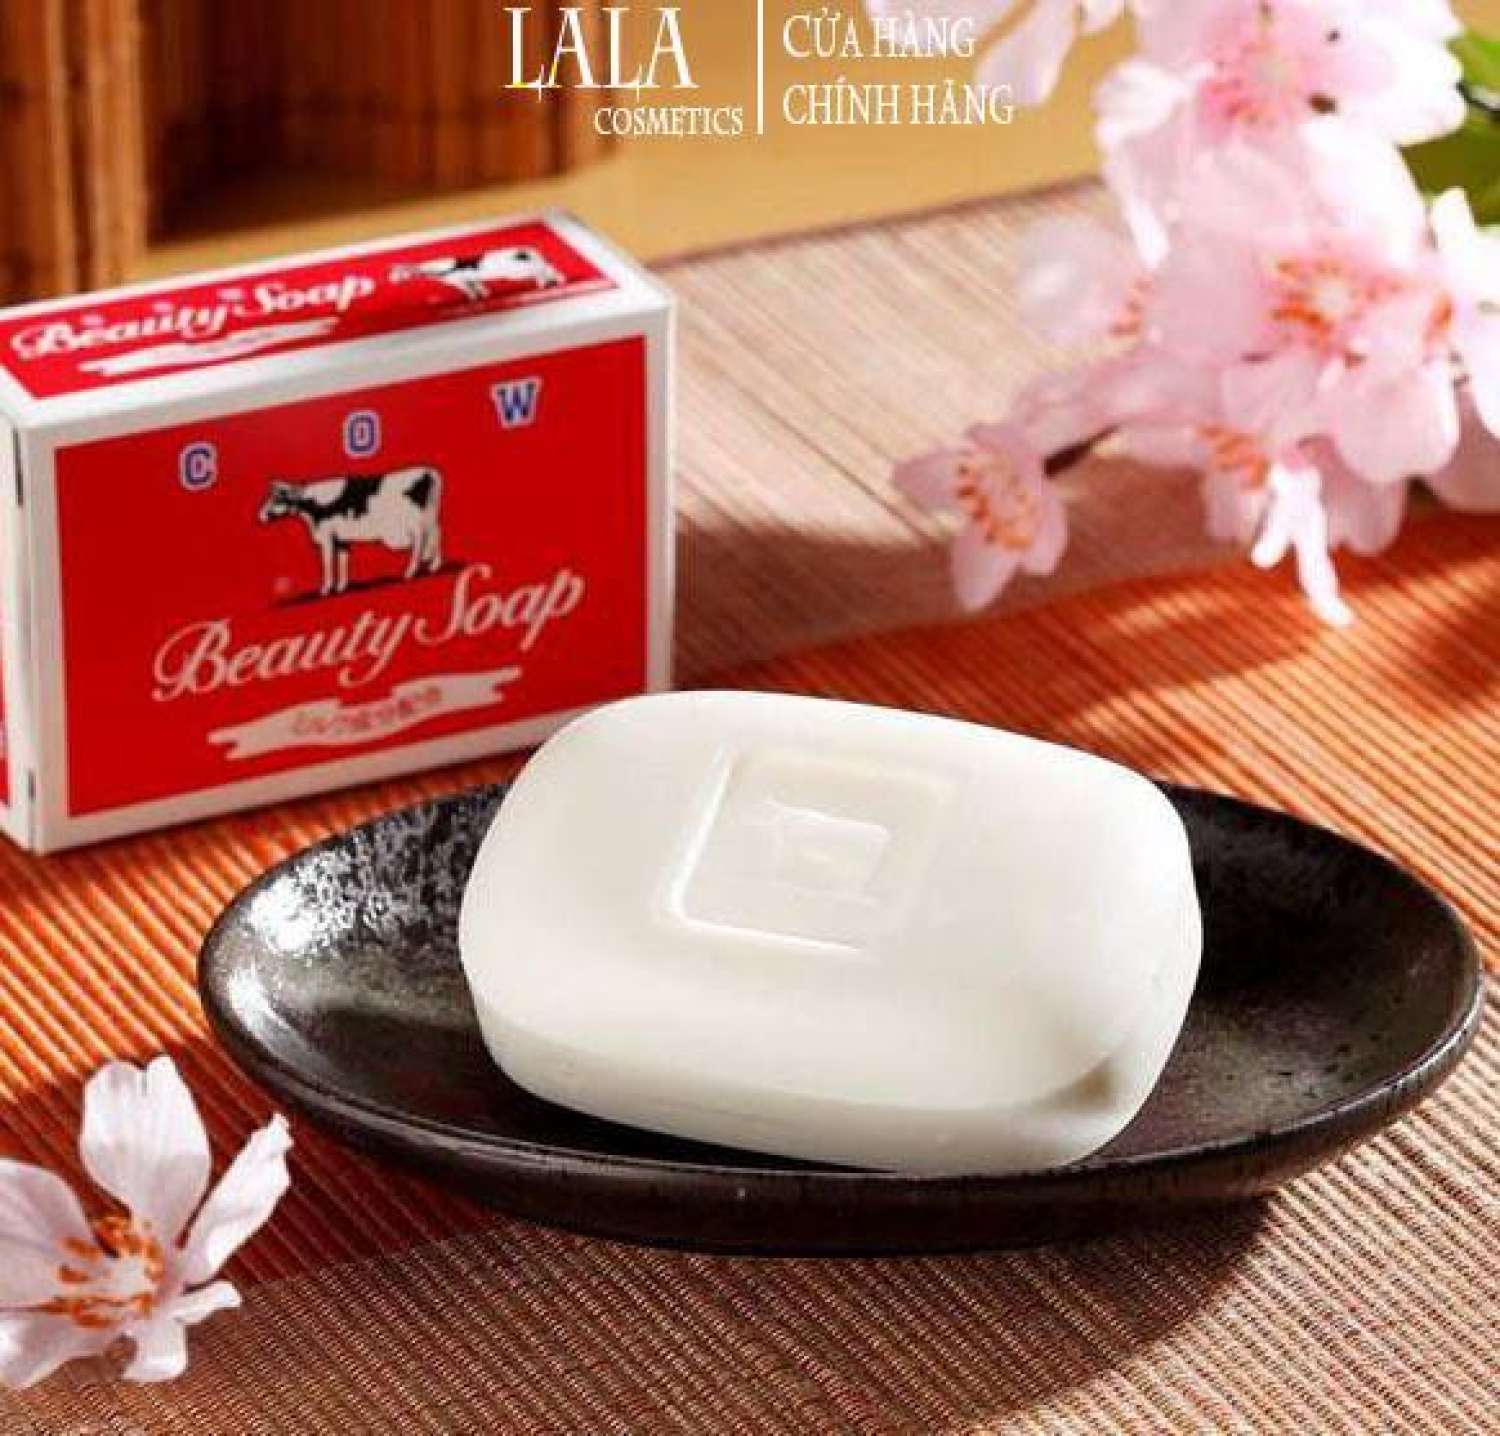 Xà phòng tắm Cow Beauty Soap dùng được cho da mặt 100g chiết xuất từ sữa bò tươi nguyên chất